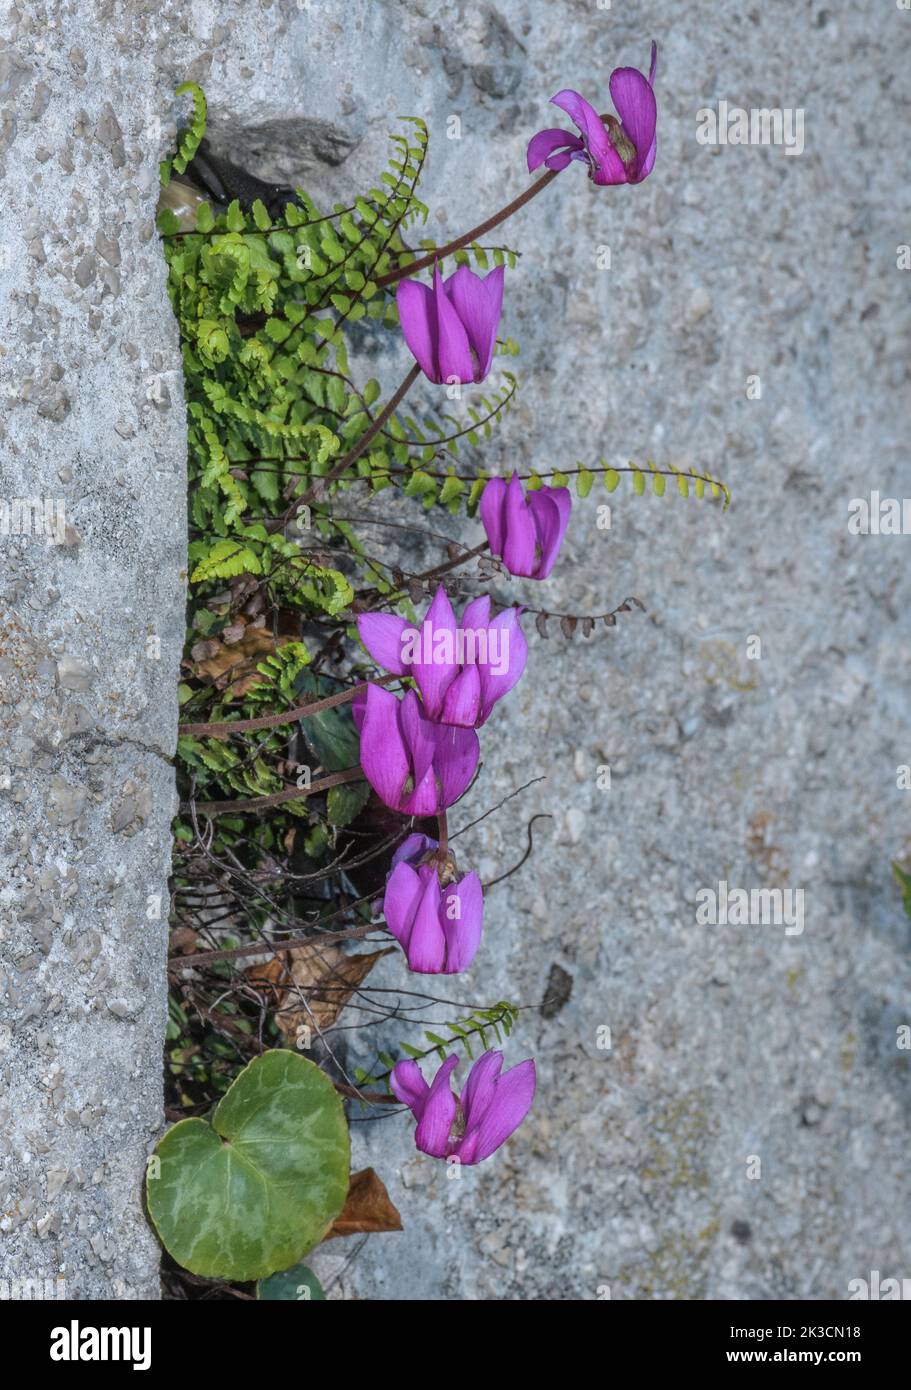 Ciclamen alpino, Cyclamen purpurascens, en flor en la ladera de piedra caliza en los Alpes italianos. Foto de stock